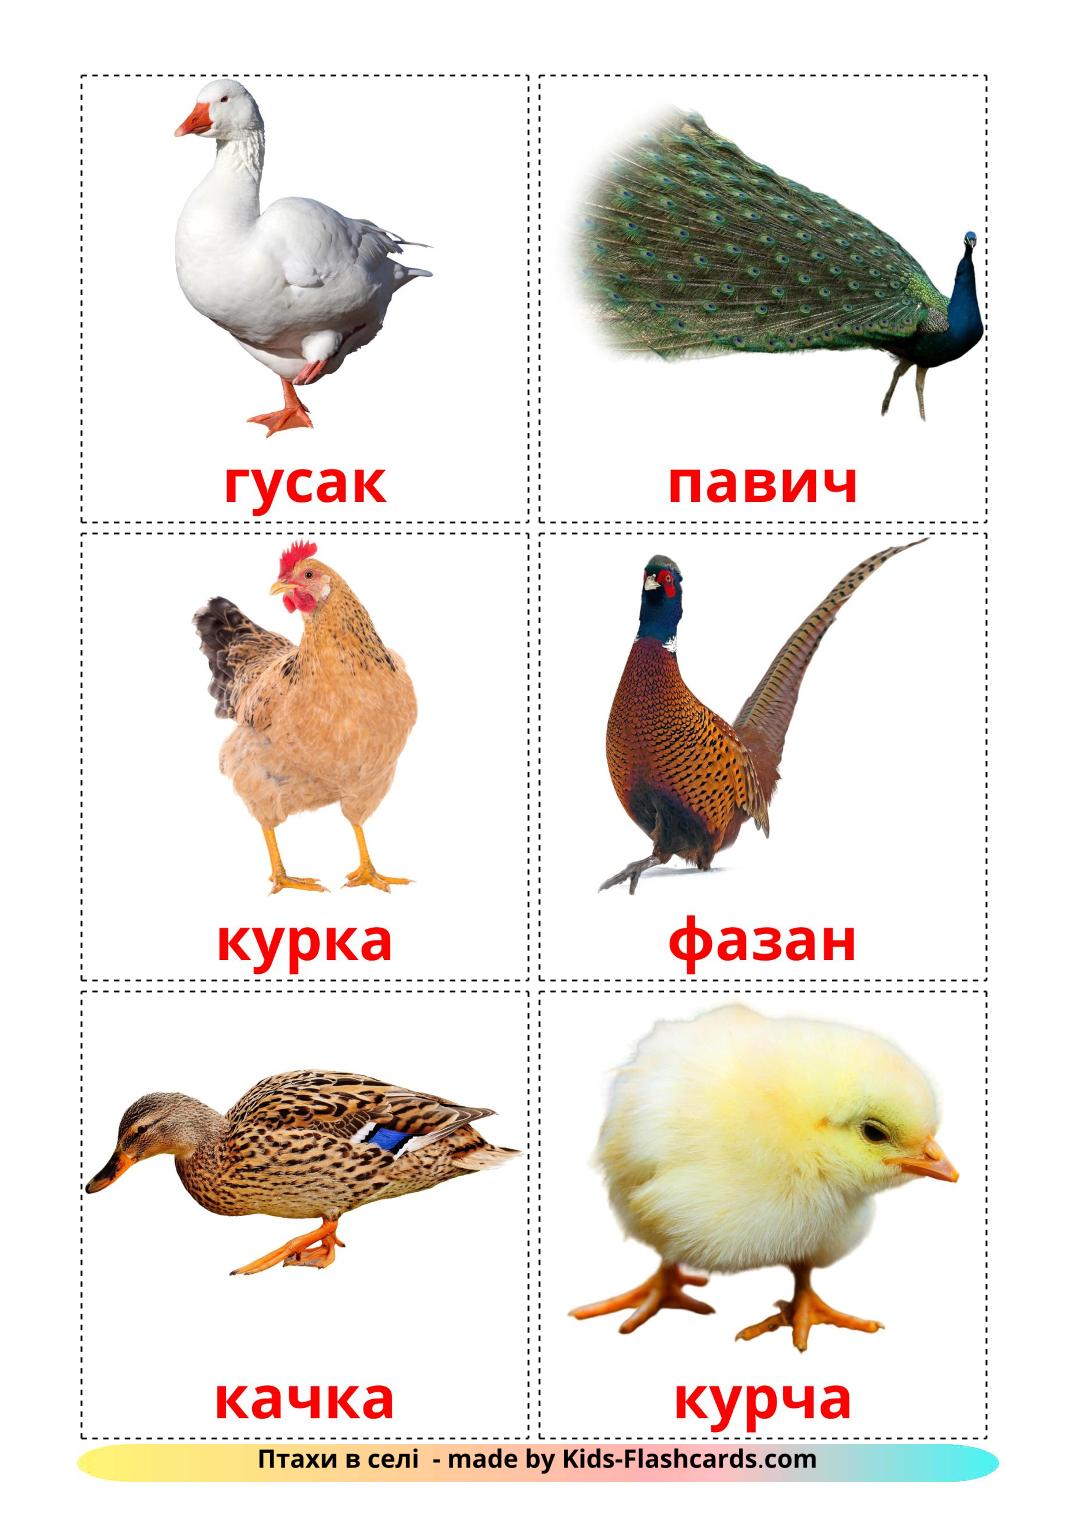 Les Oiseaux de Ferme - 11 Flashcards ukrainien imprimables gratuitement